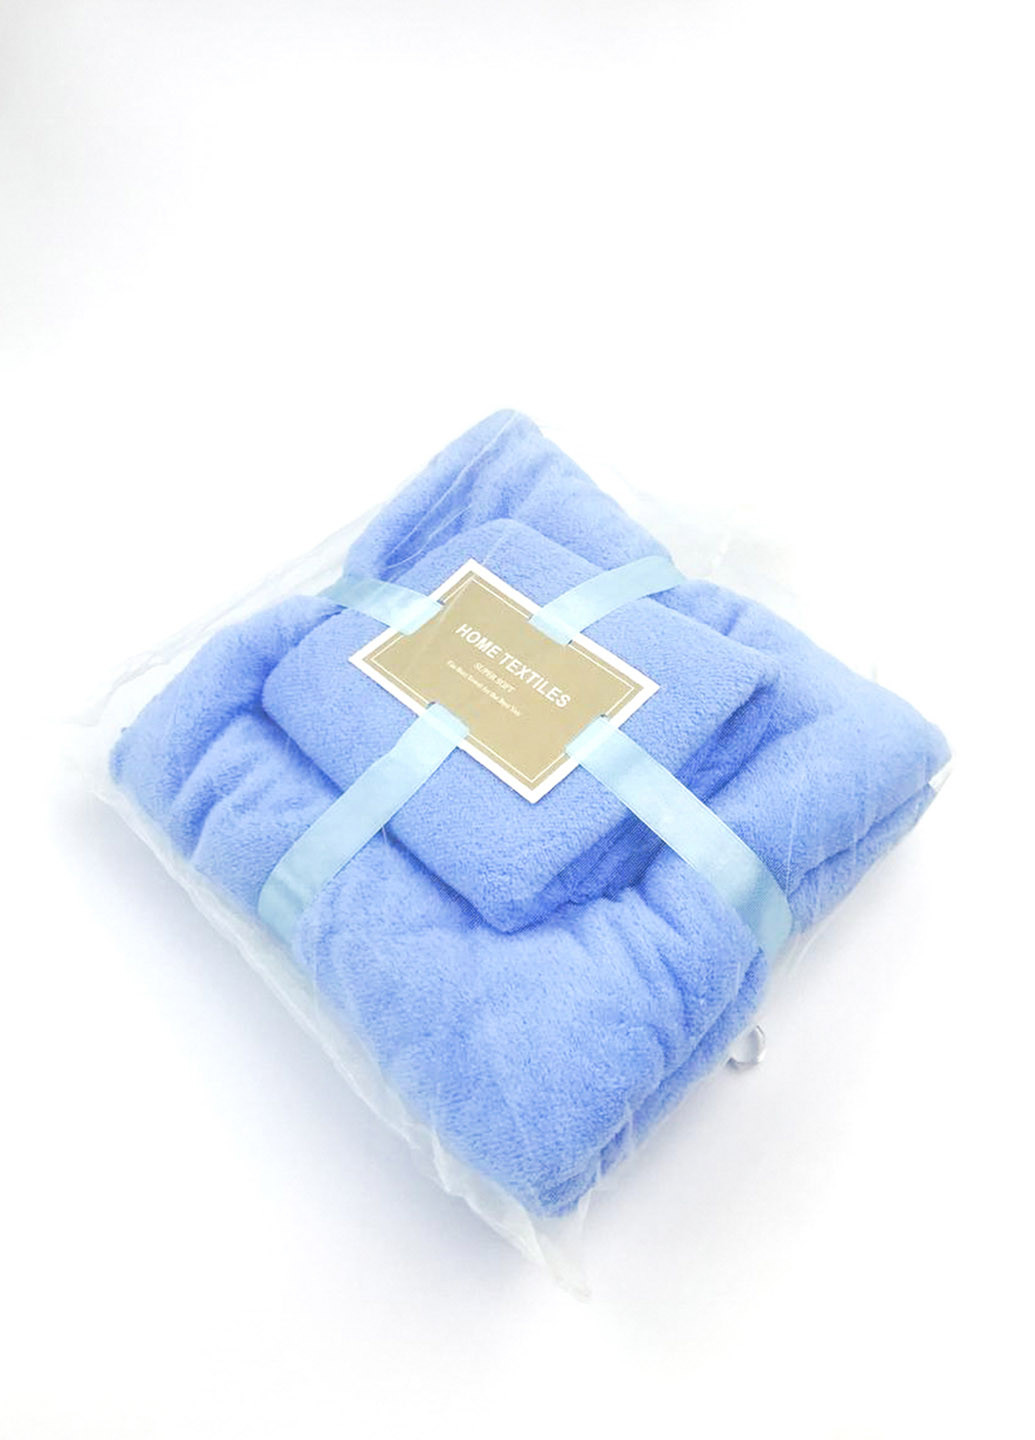 Homedec комплект однотонных полотенец 2 шт., микрофибра однотонный голубой производство - Турция